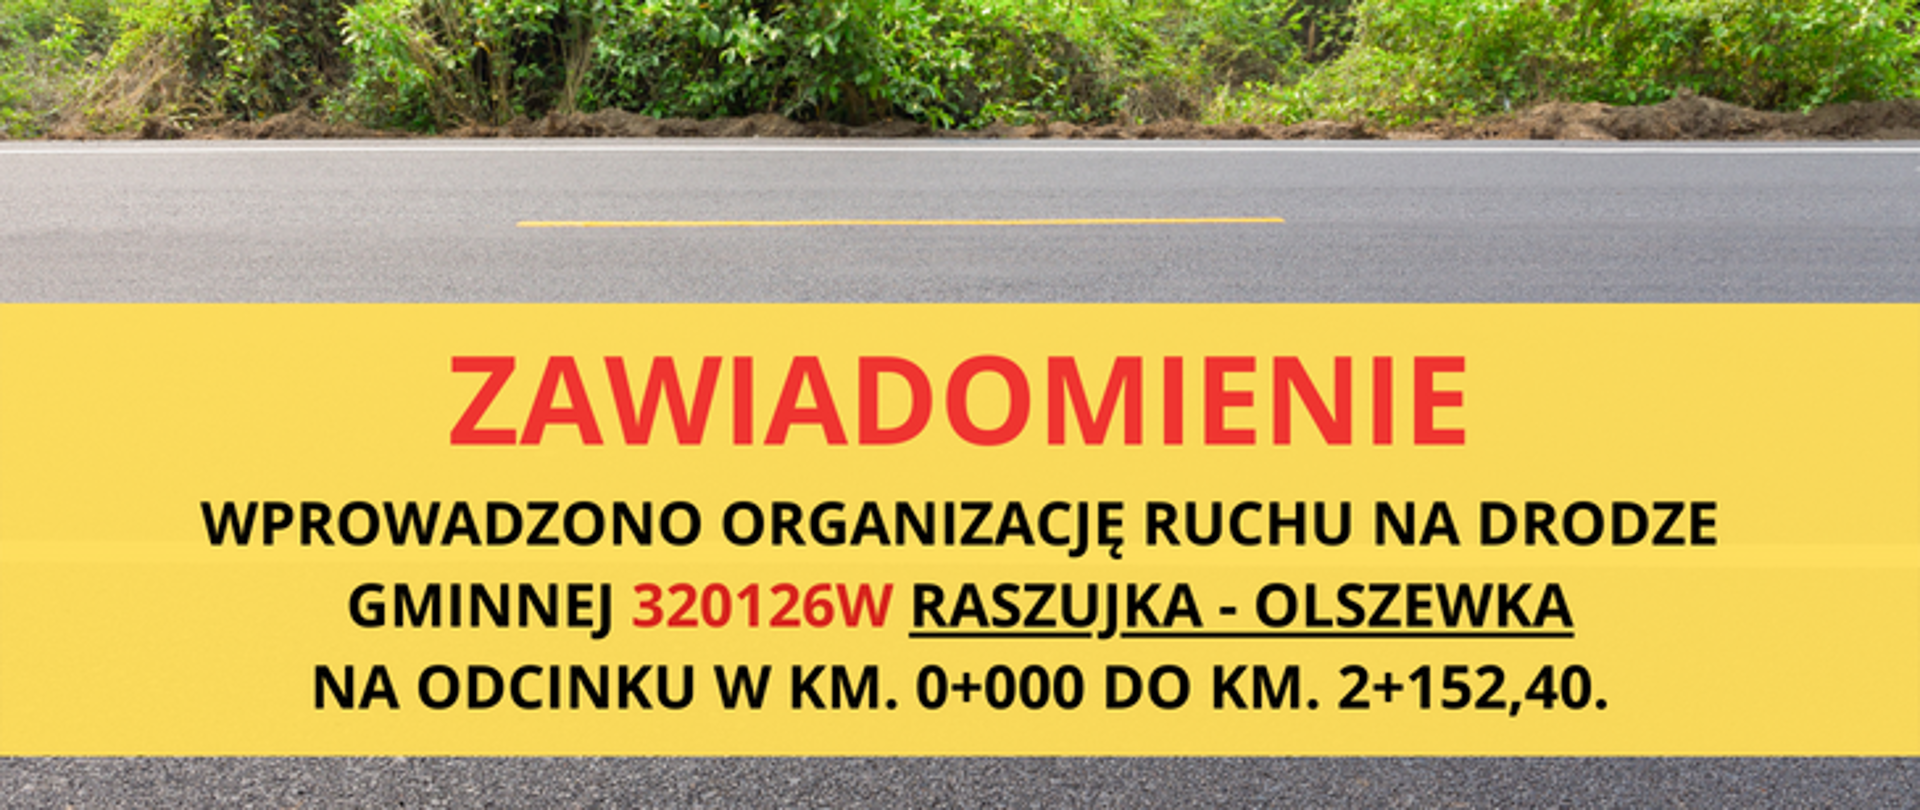 Wprowadzono organizację ruchu na drodze gminnej 320126W Raszujka - Olszewka